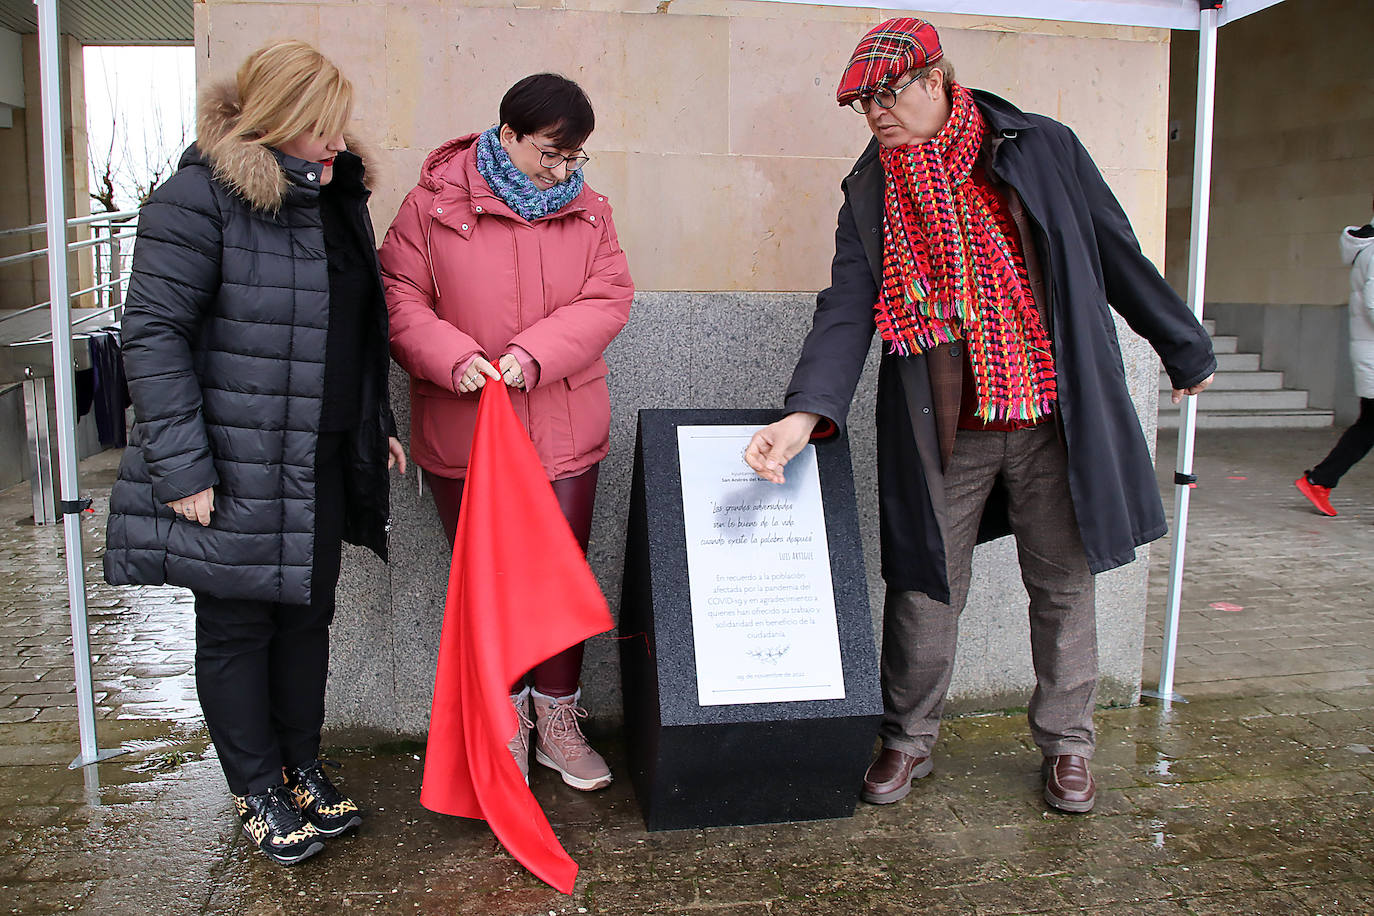 San Andrés descubre un monolito frente al Ayuntamiento en recuerdo de las víctimas de la covid-19.